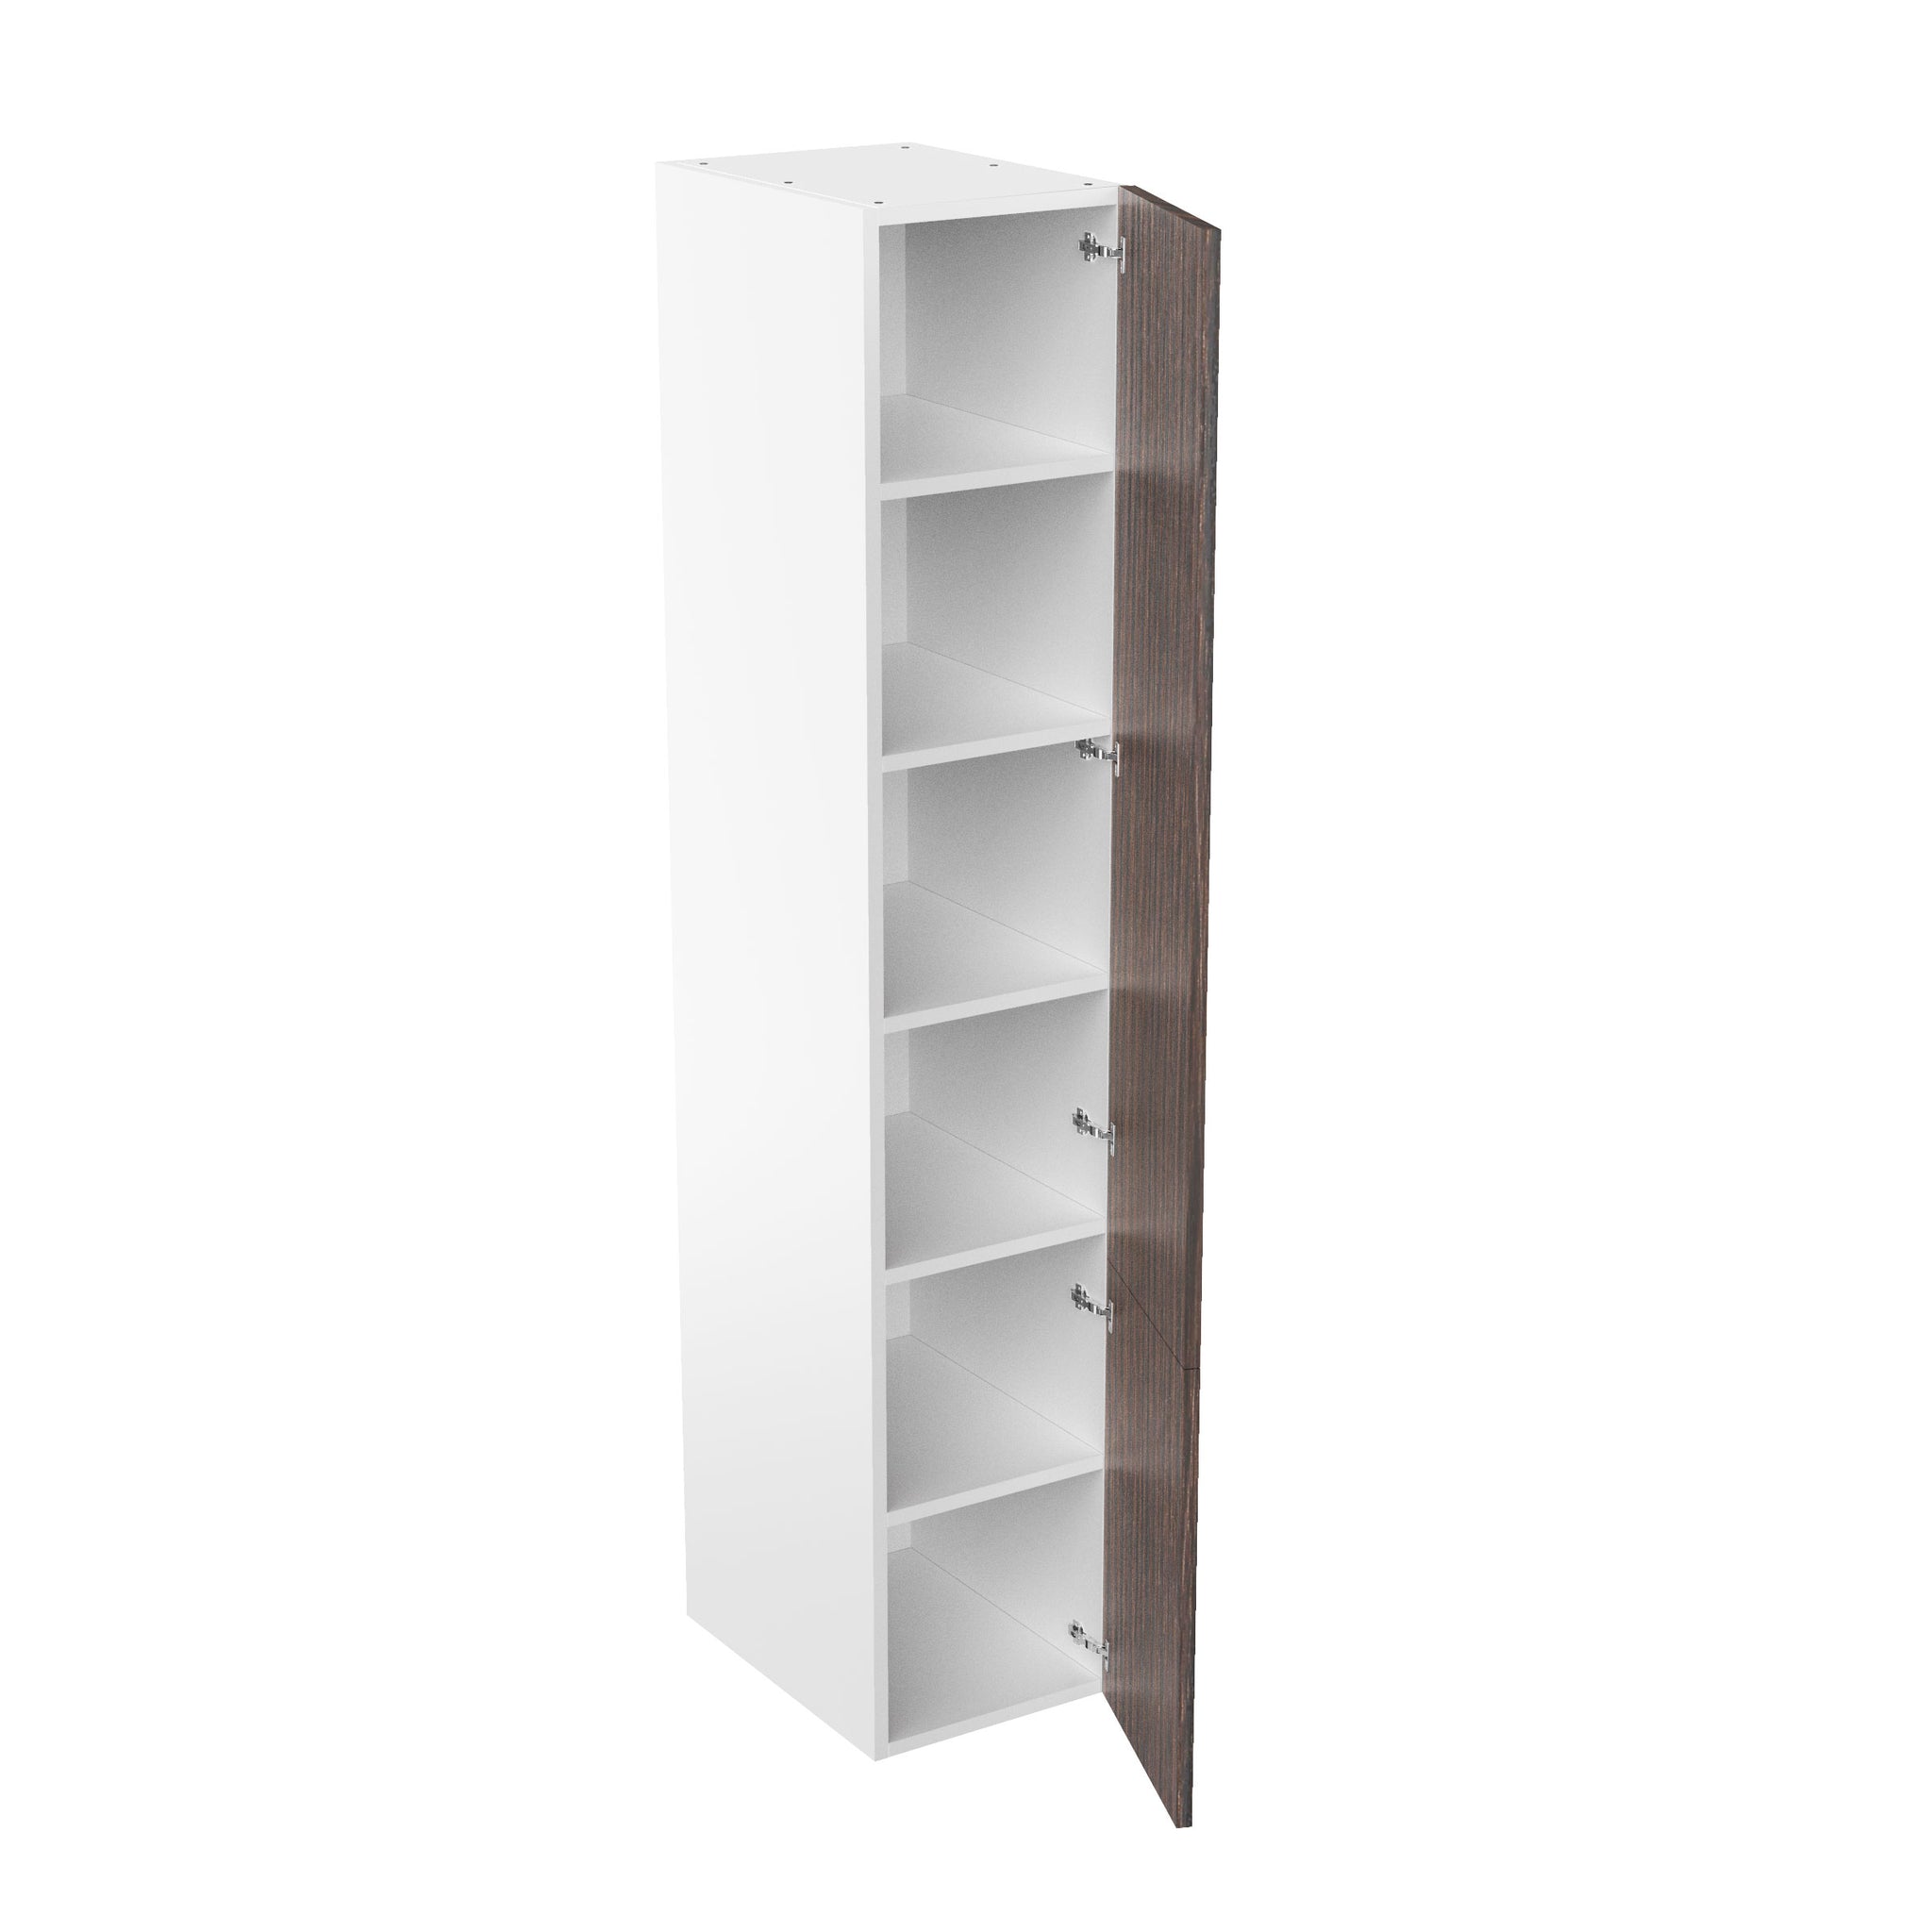 RTA - Brown Oak - Single Door Tall Cabinets | 15"W x 96"H x 23.8"D